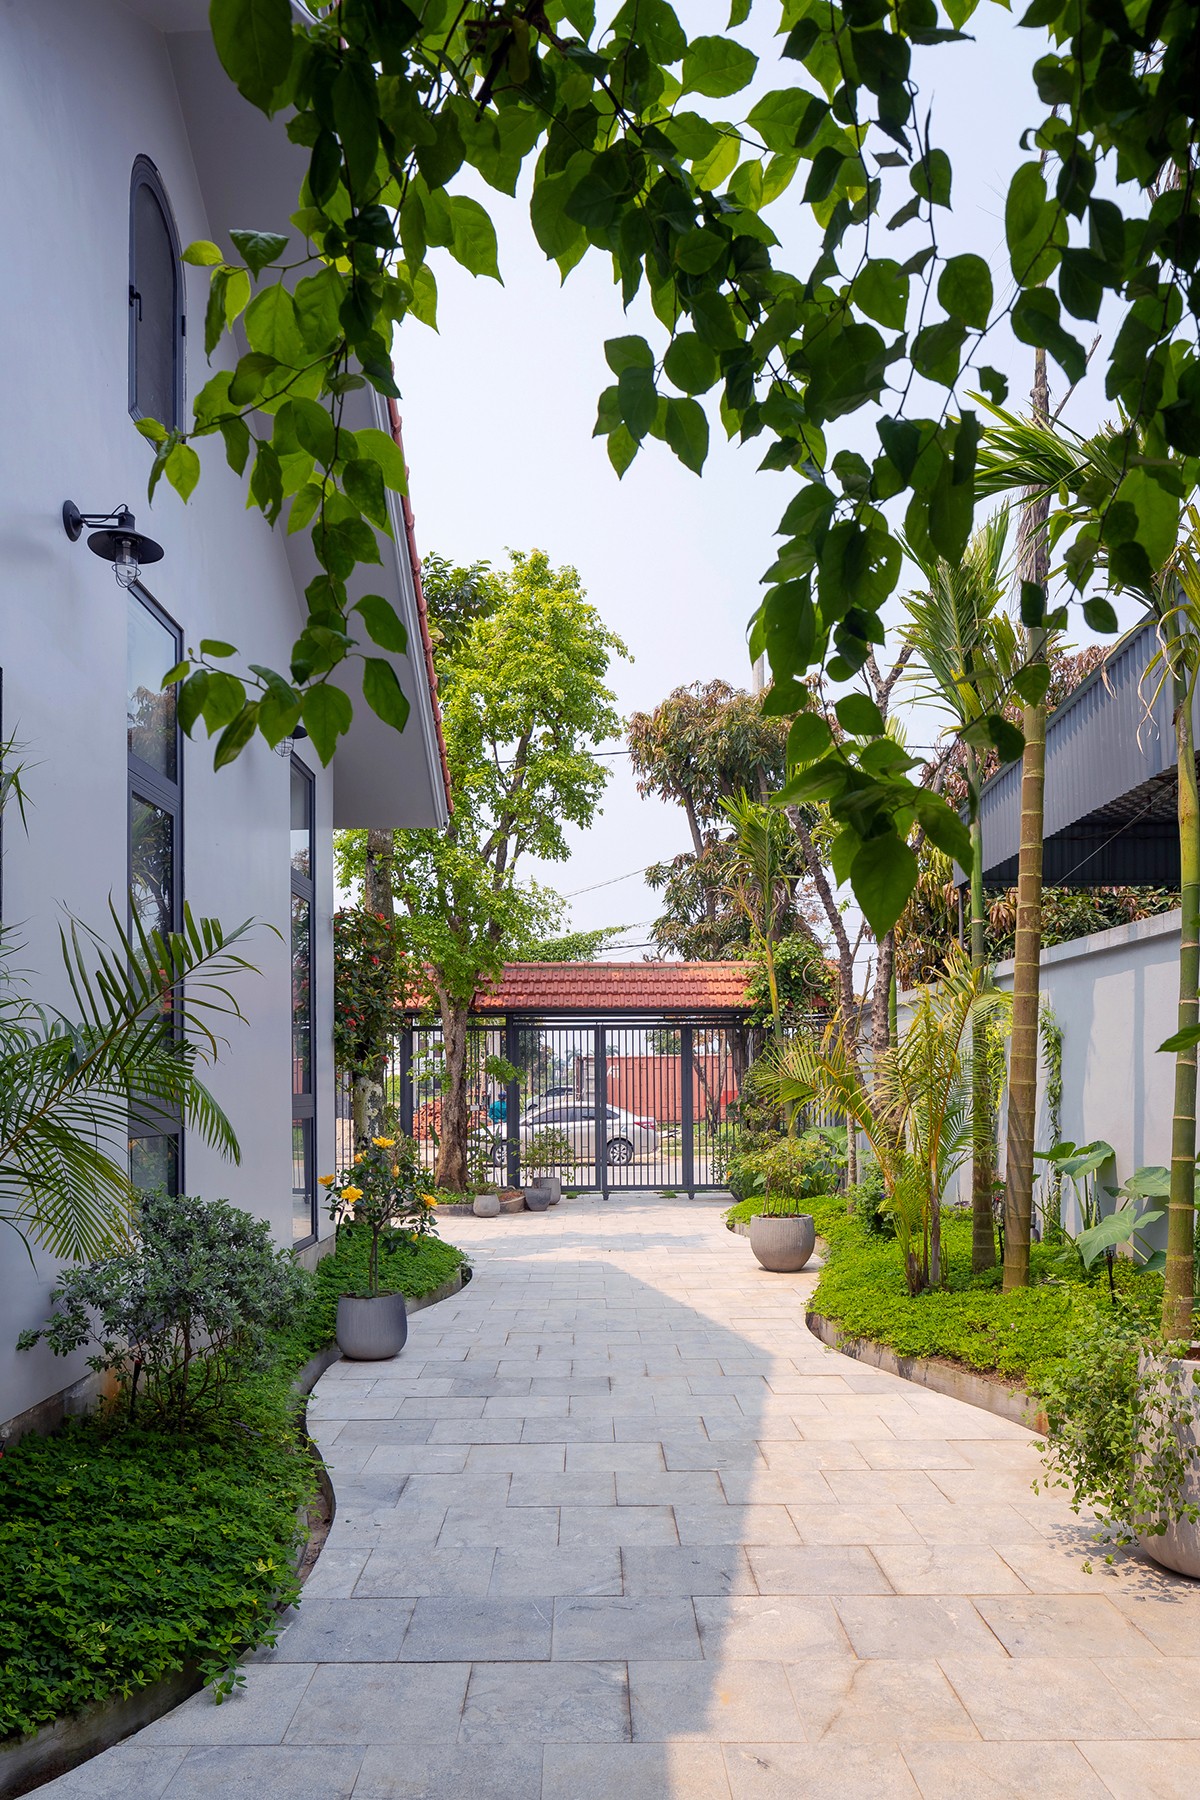 
Khoảng sân vườn uốn lượn như đường làng Việt
